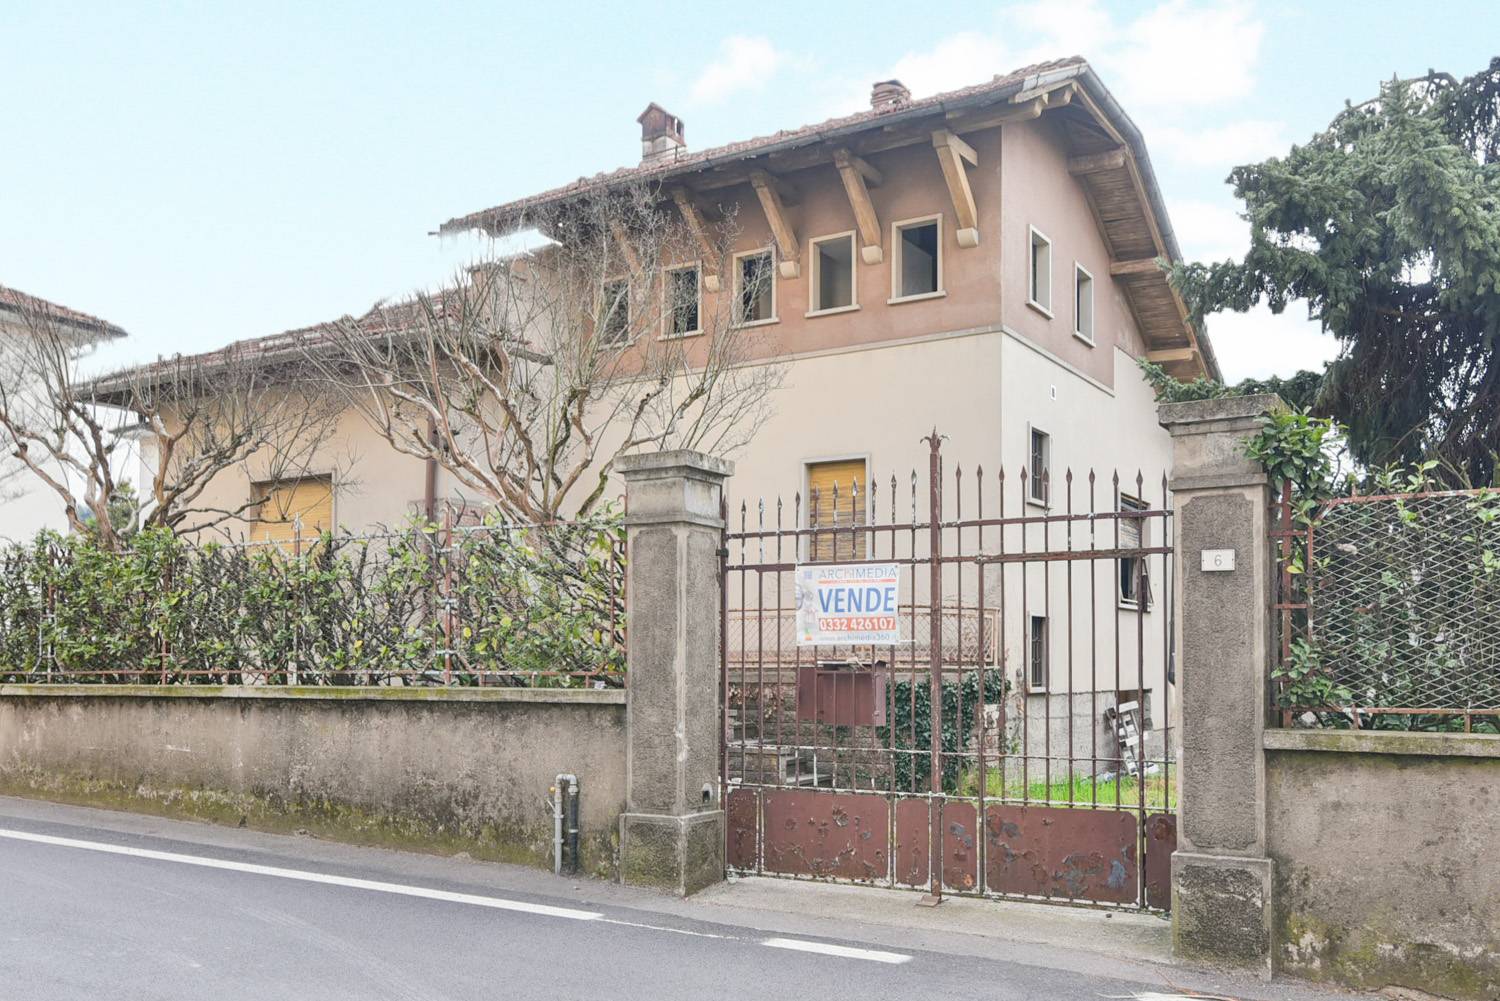 Villa in vendita a Malnate, 5 locali, zona Località: Centro, prezzo € 285.000 | PortaleAgenzieImmobiliari.it